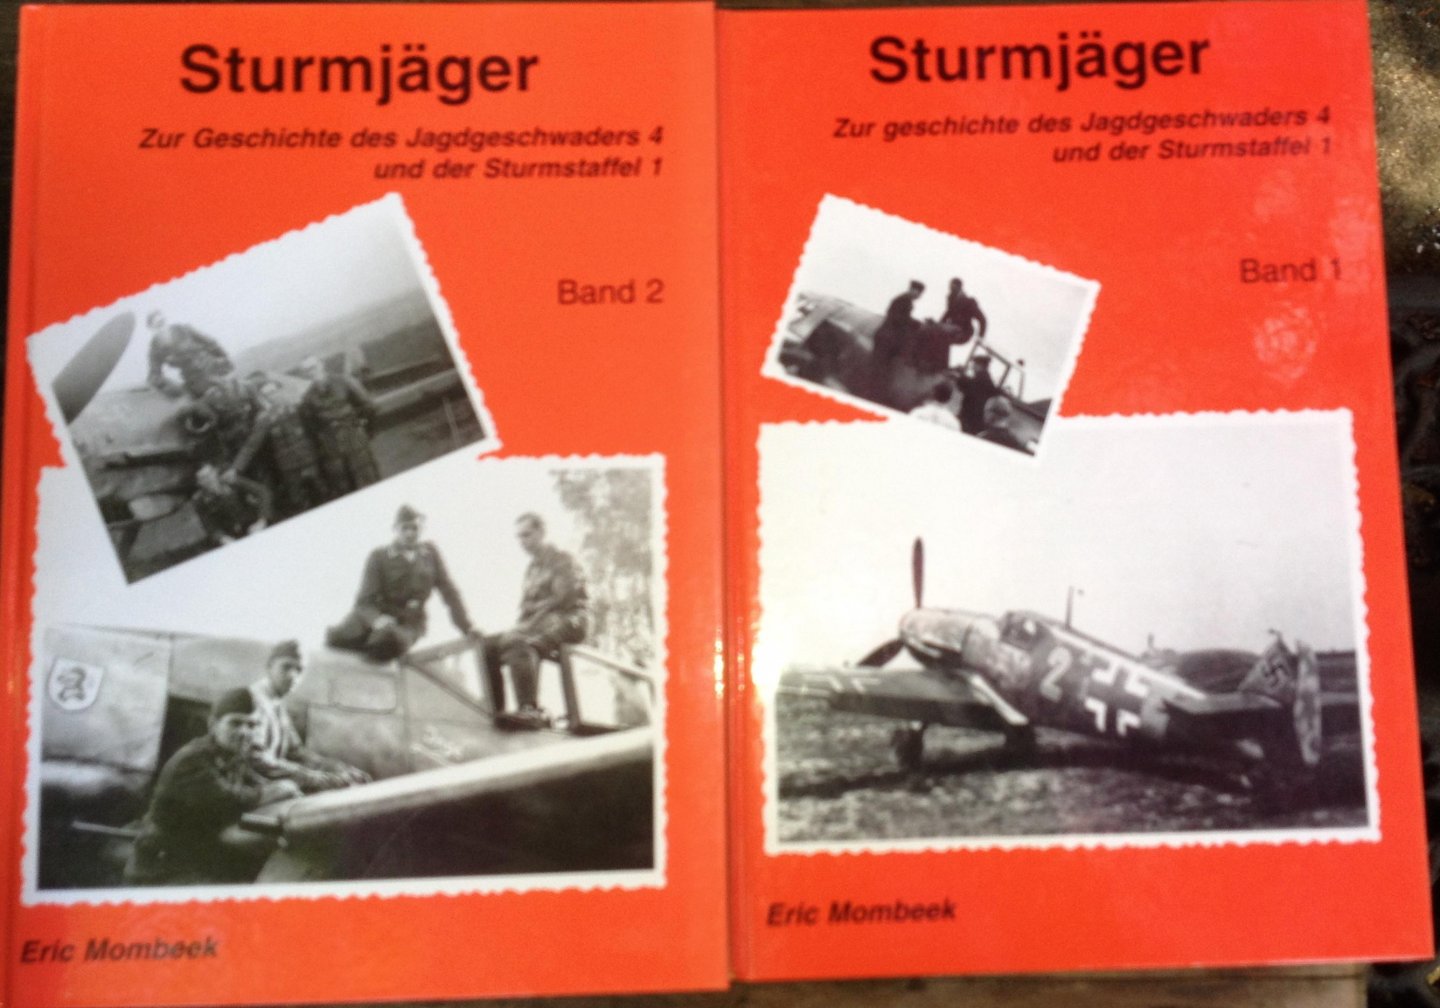 Mombeek, Eric. - Sturmjäger - Zur Geschichte des Jagdgeschwaders 4 und der Sturmstaffel 1